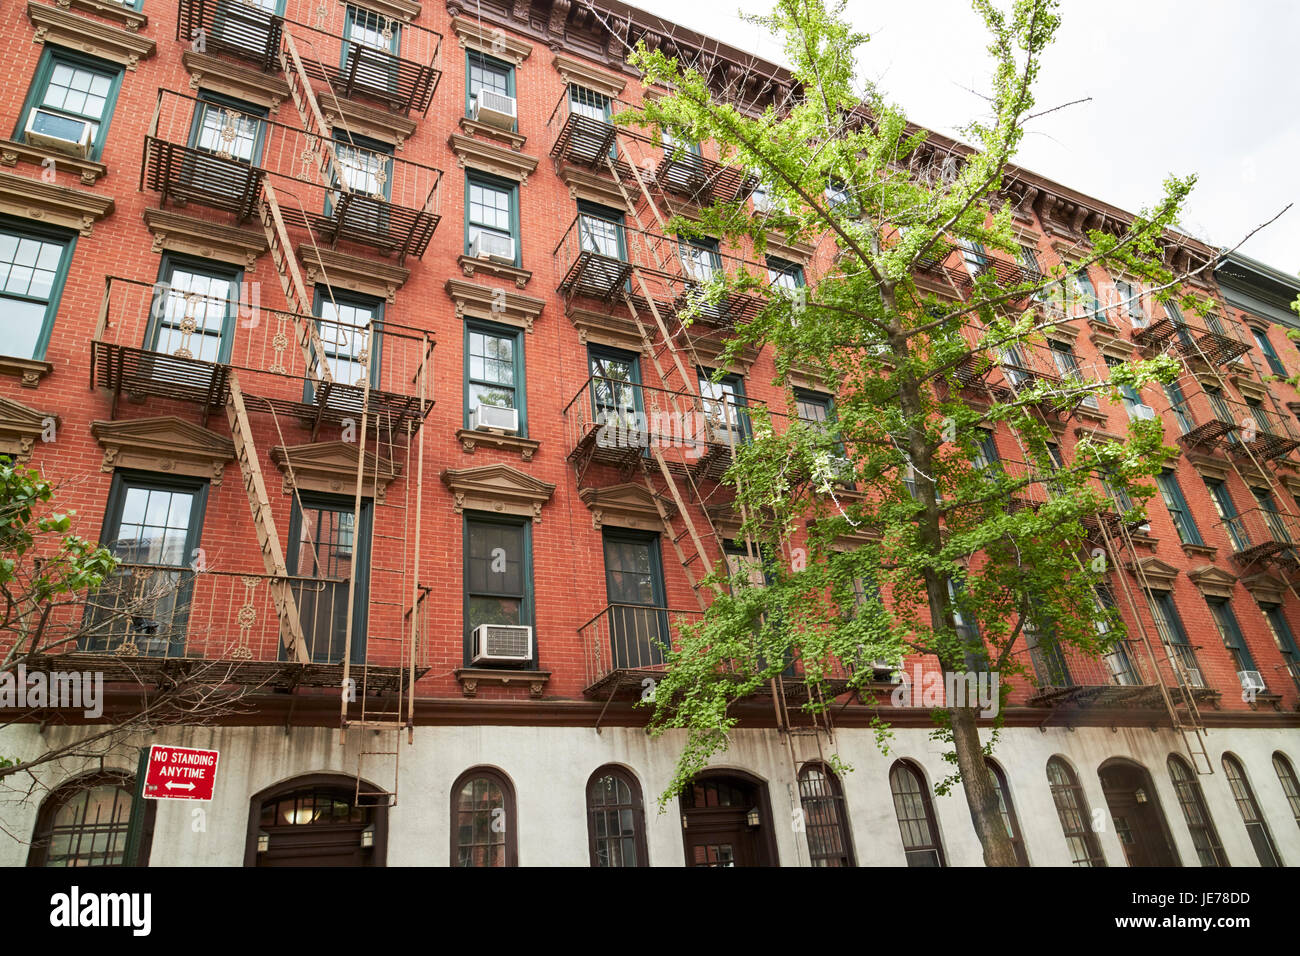 Appartement de bas étages en brique rouge avec des blocs de secours externe Greenwich village New York City USA Banque D'Images